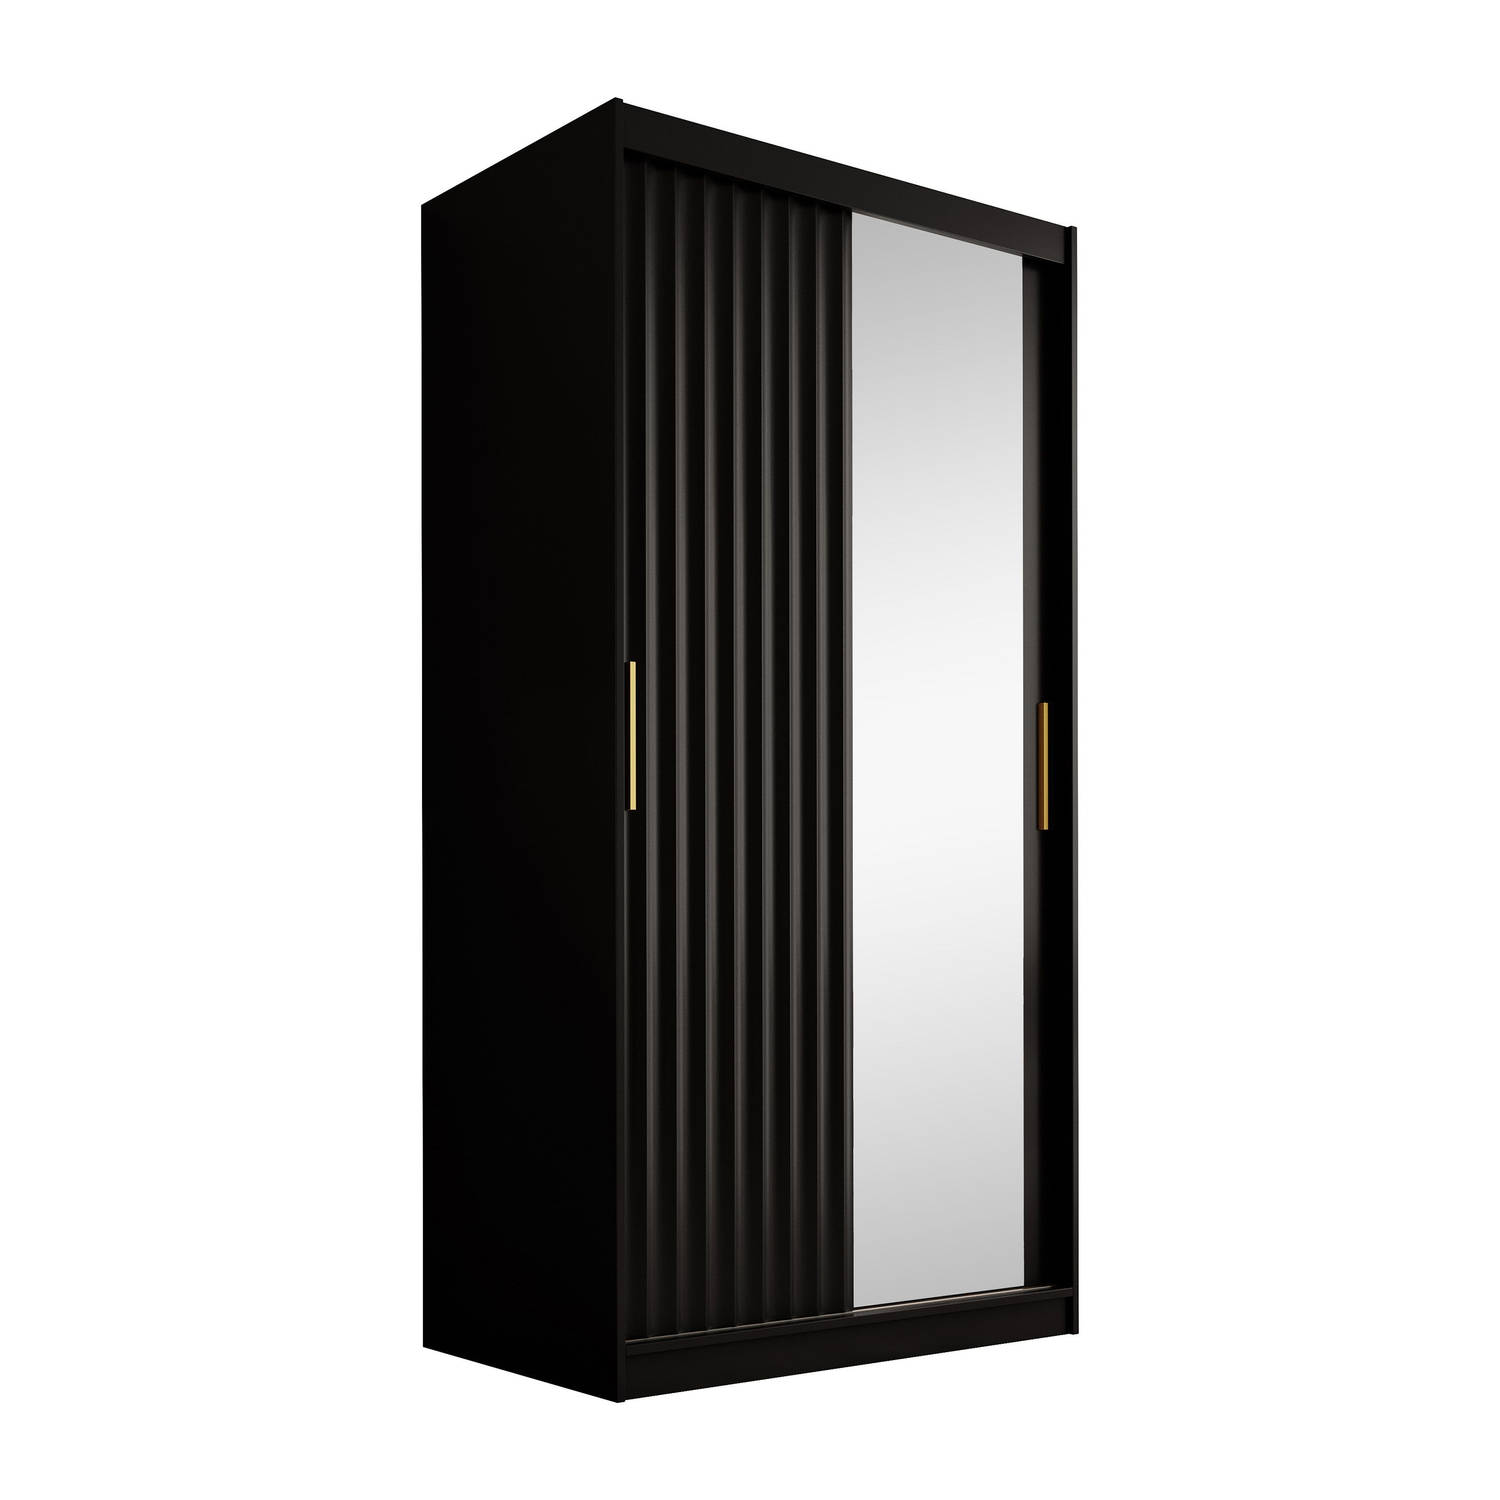 Meubella - Kledingkast Wynn - Mat zwart - 100 cm - Met spiegel